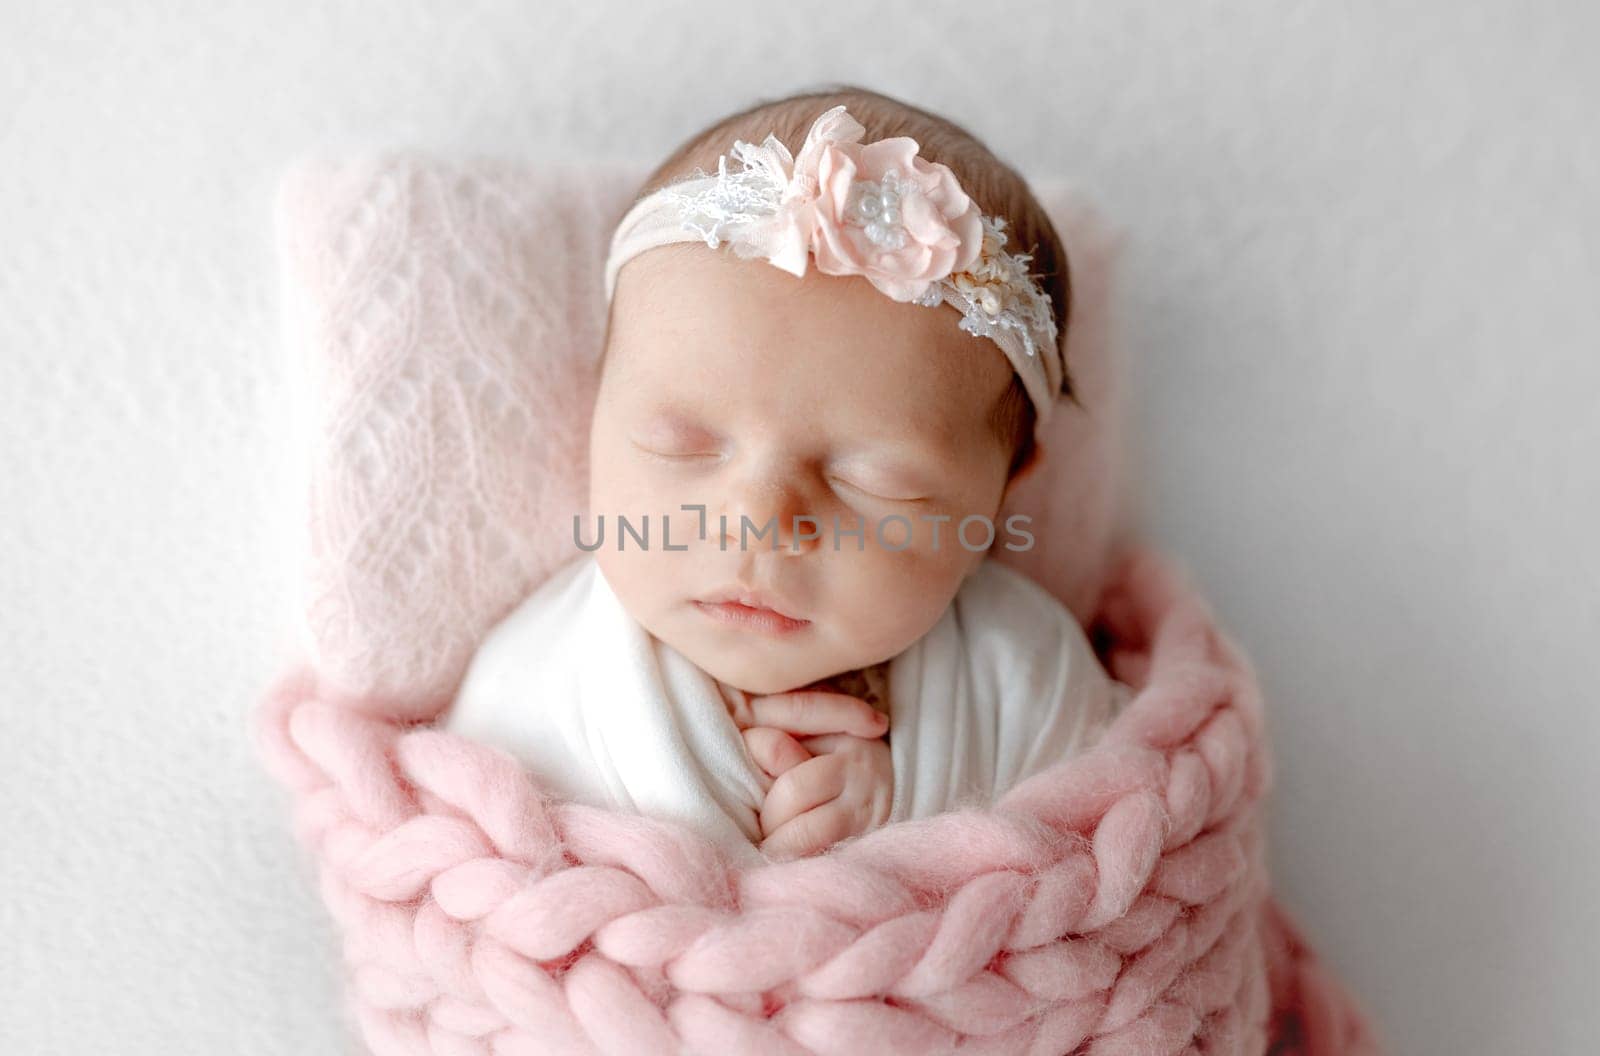 Baby Girl Sleeps Under Blanket With Headband On by tan4ikk1